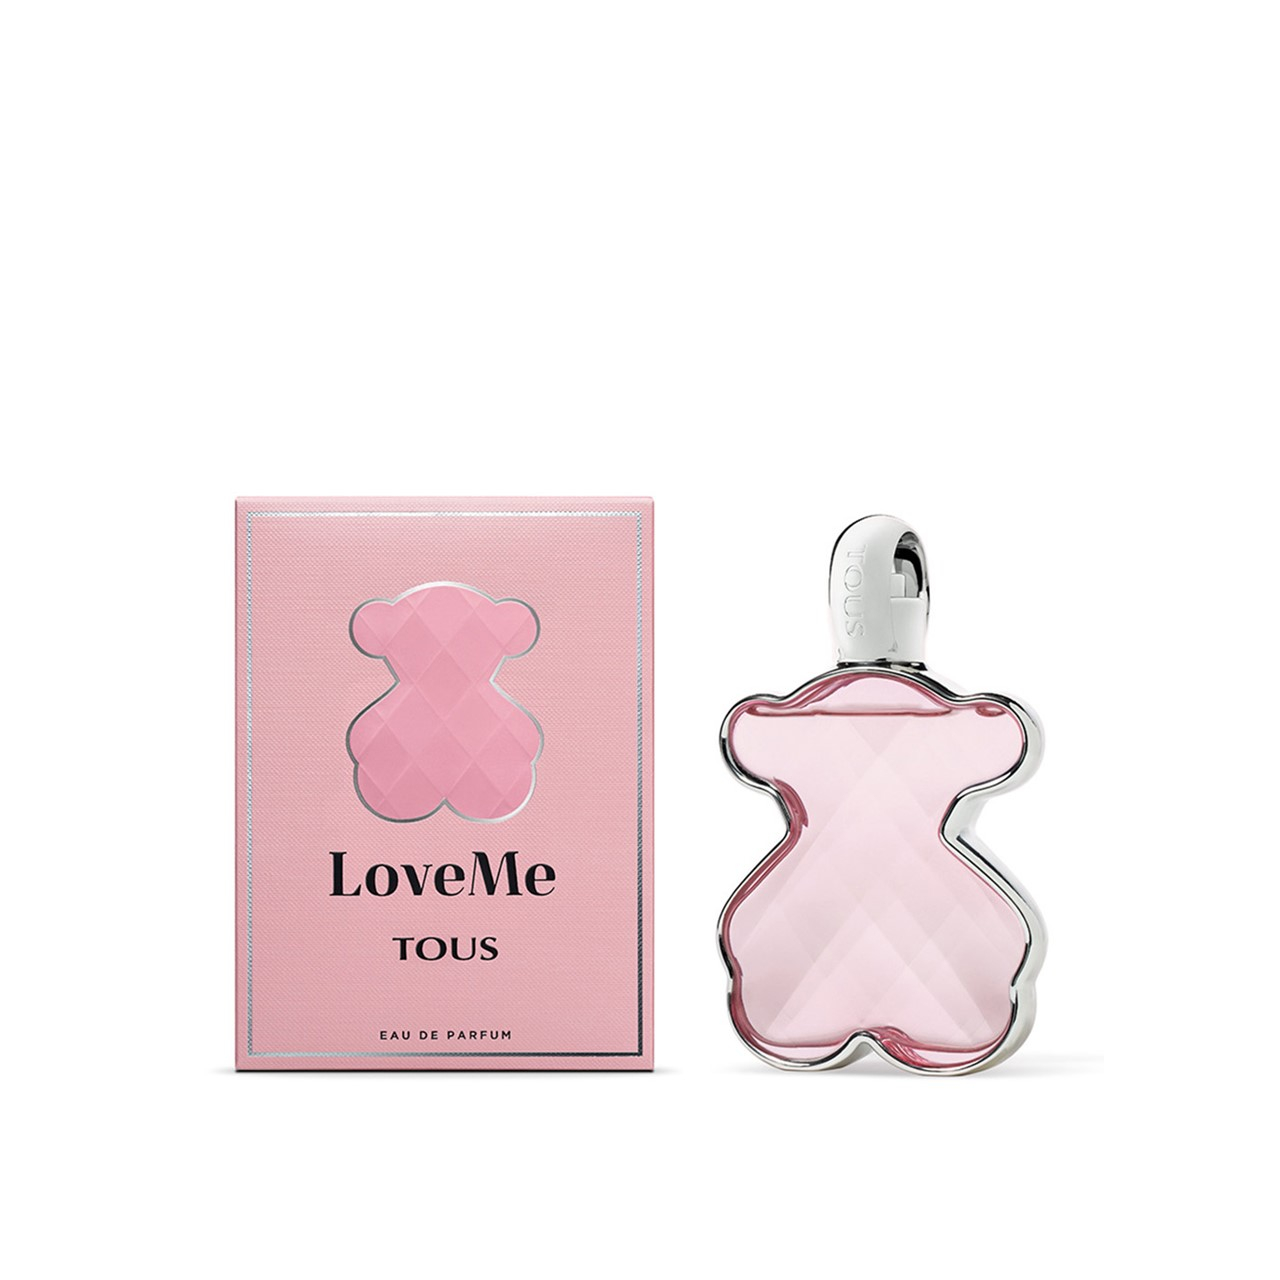 Buy Tous LoveMe Eau de Parfum · USA